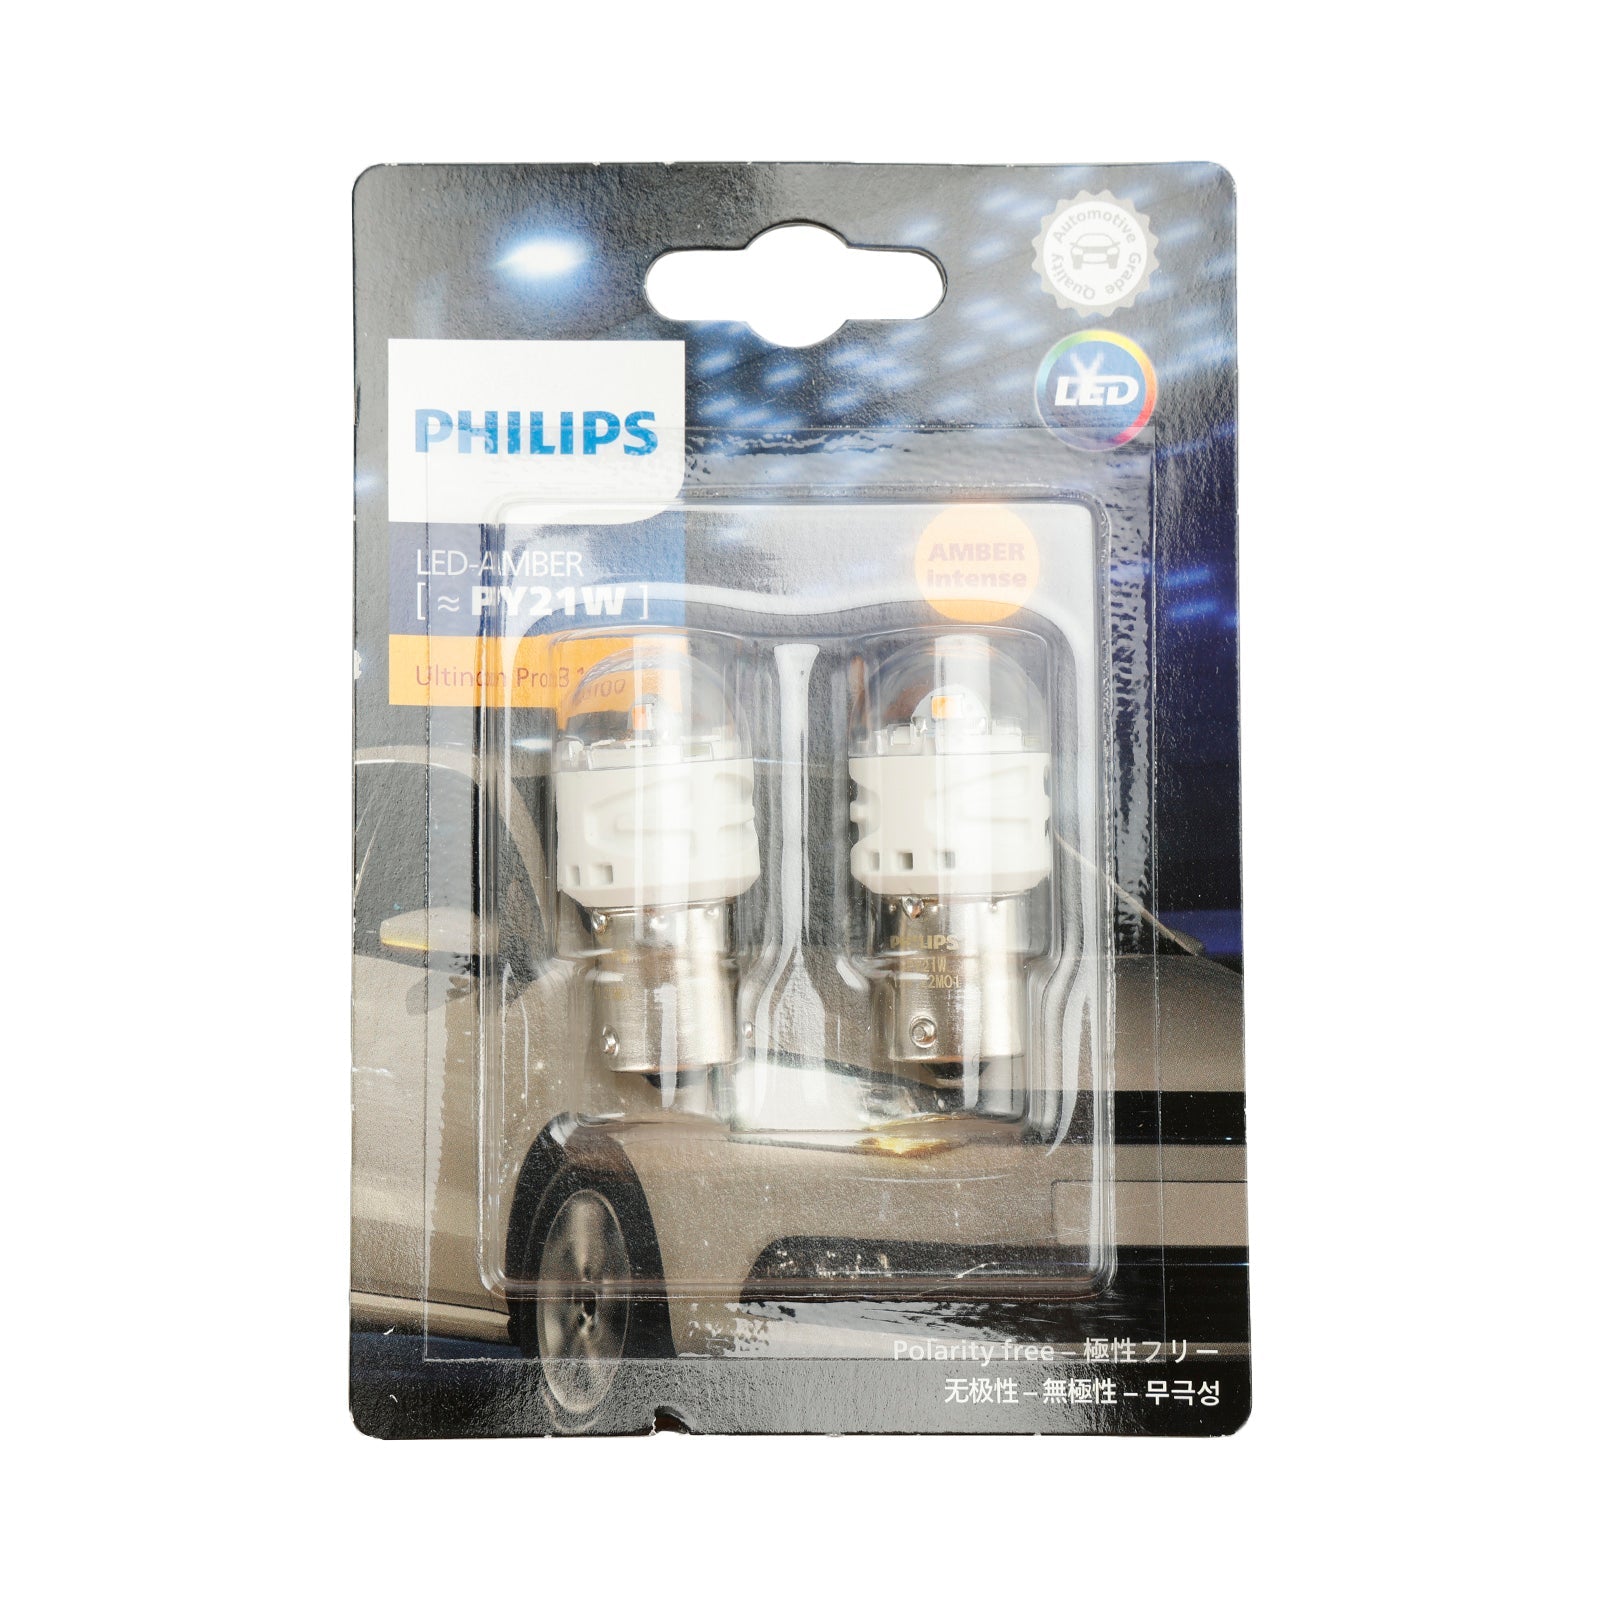 Pour Philips 11496AU31B2 Ultinon Pro3100 LED-AMBRE PY21W BAU15s 12V